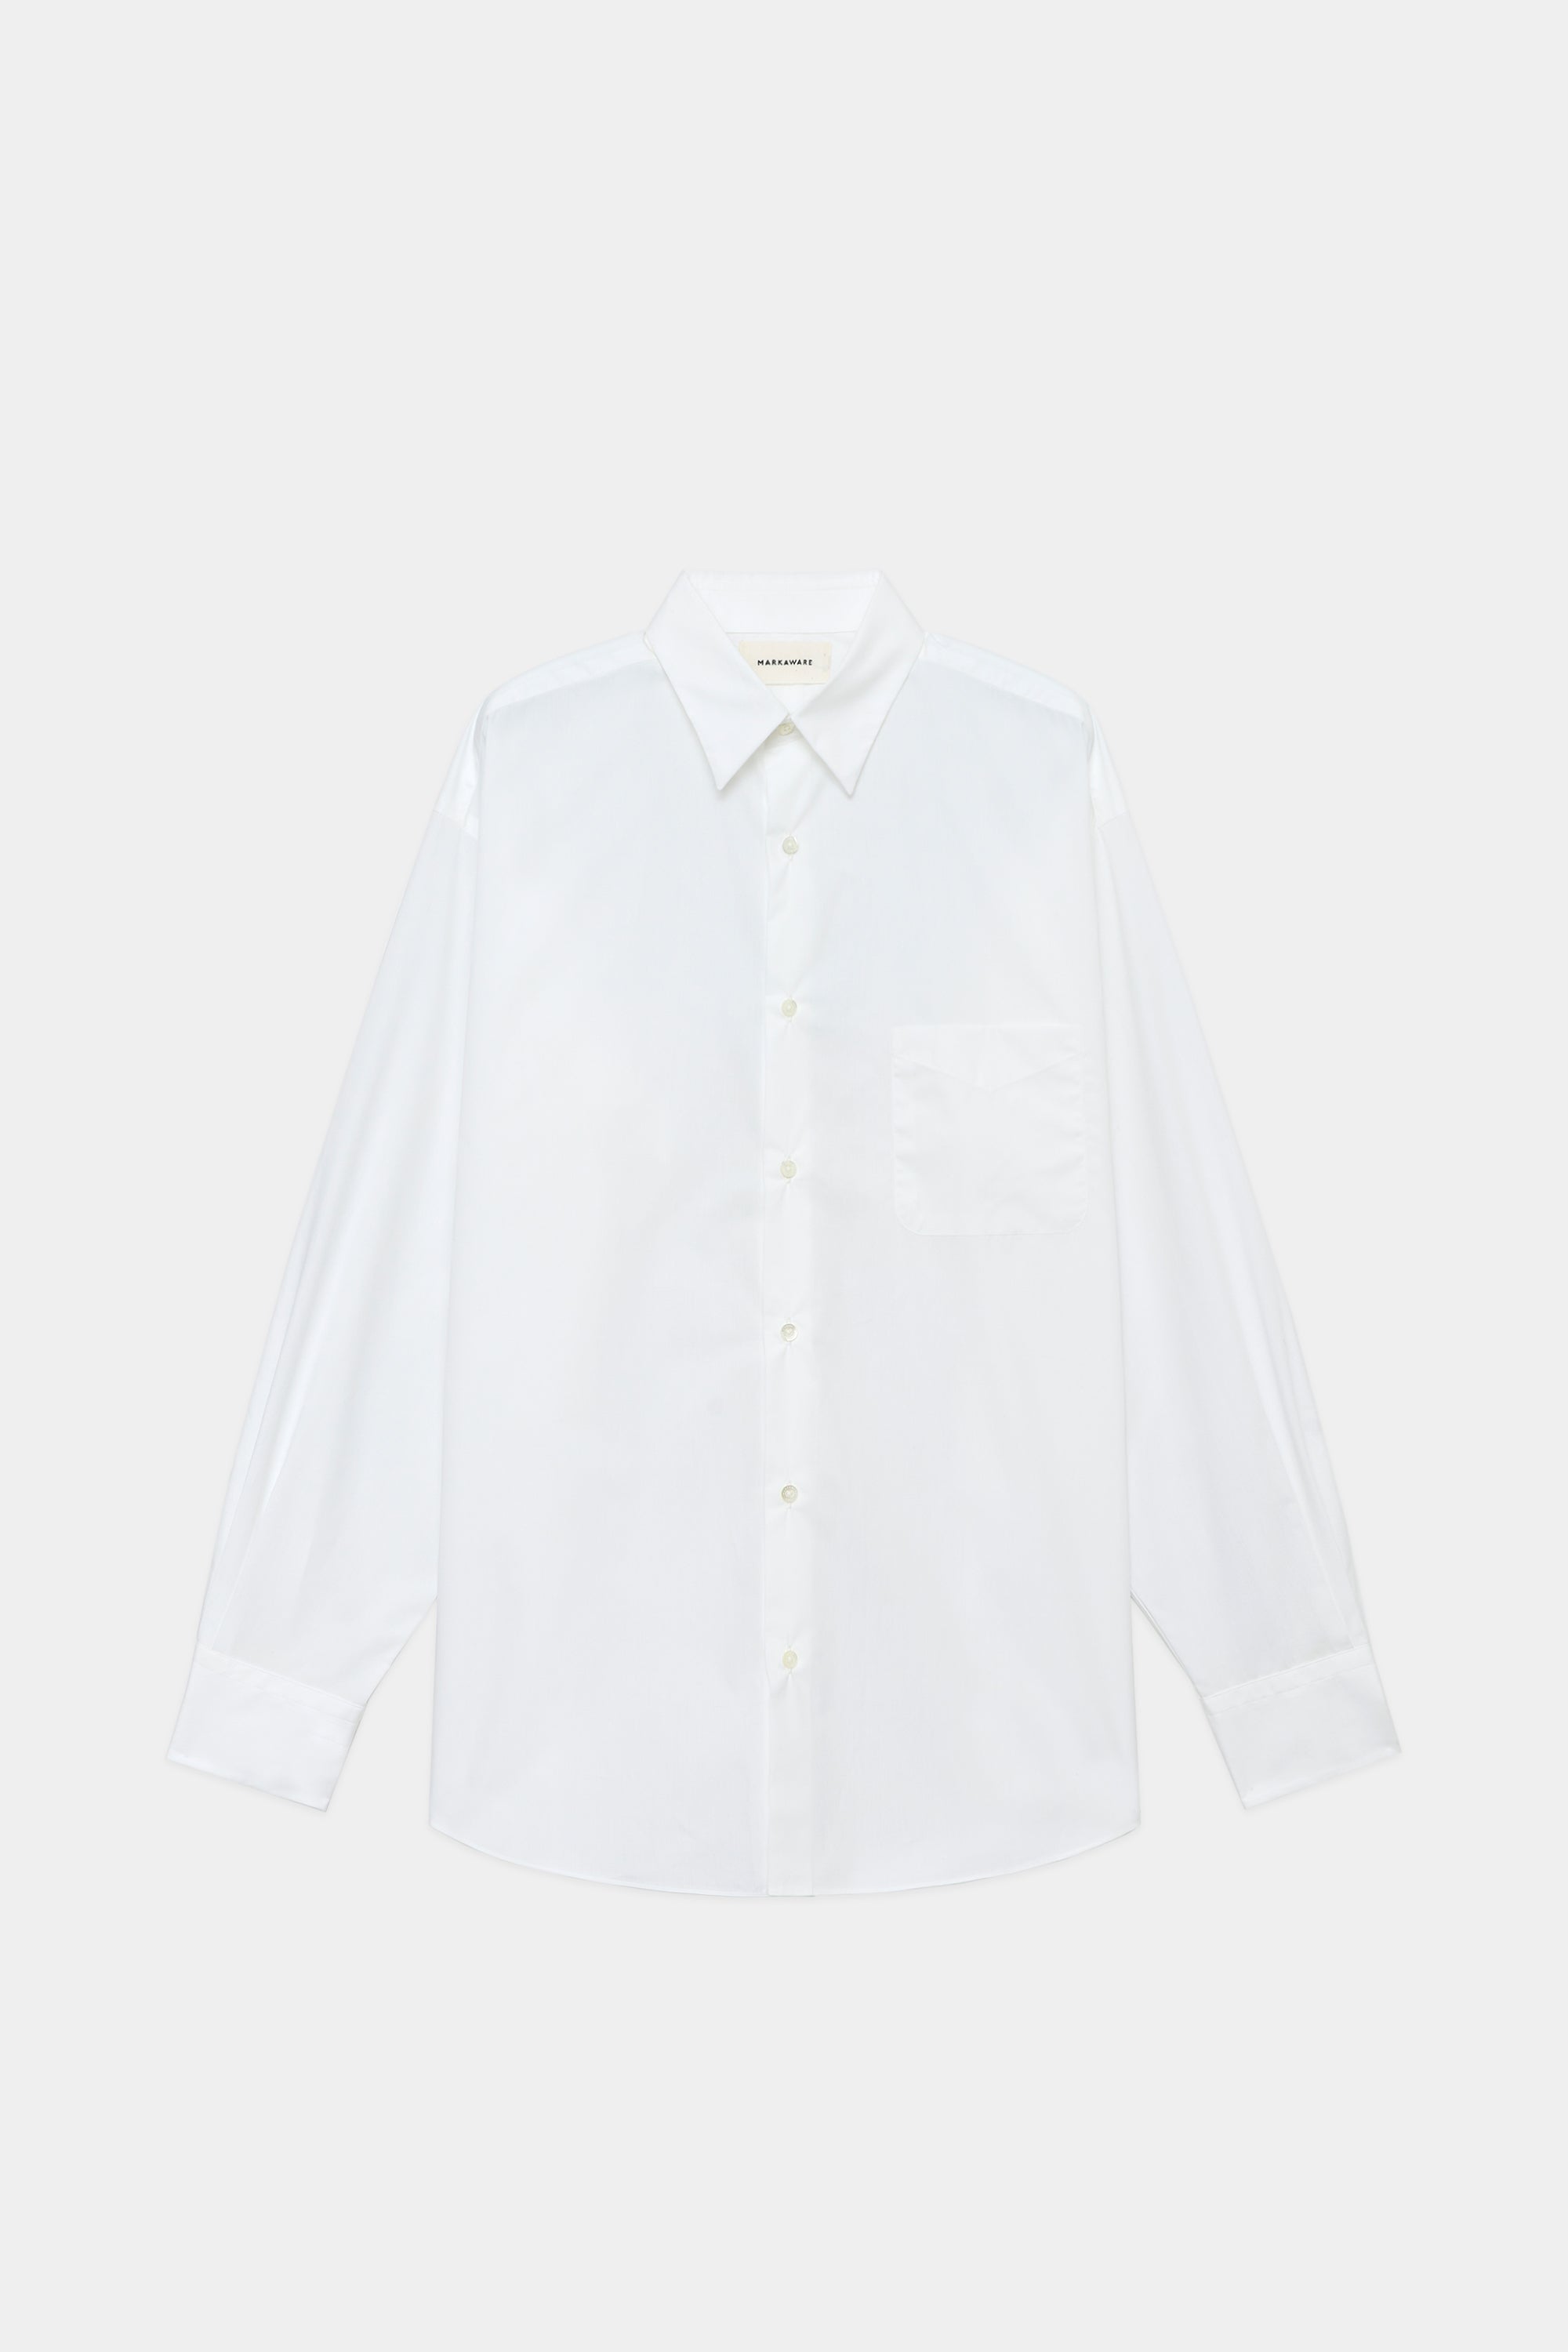 11,040円SOKTAS ポプリン / コンフォートフィットシャツ, White